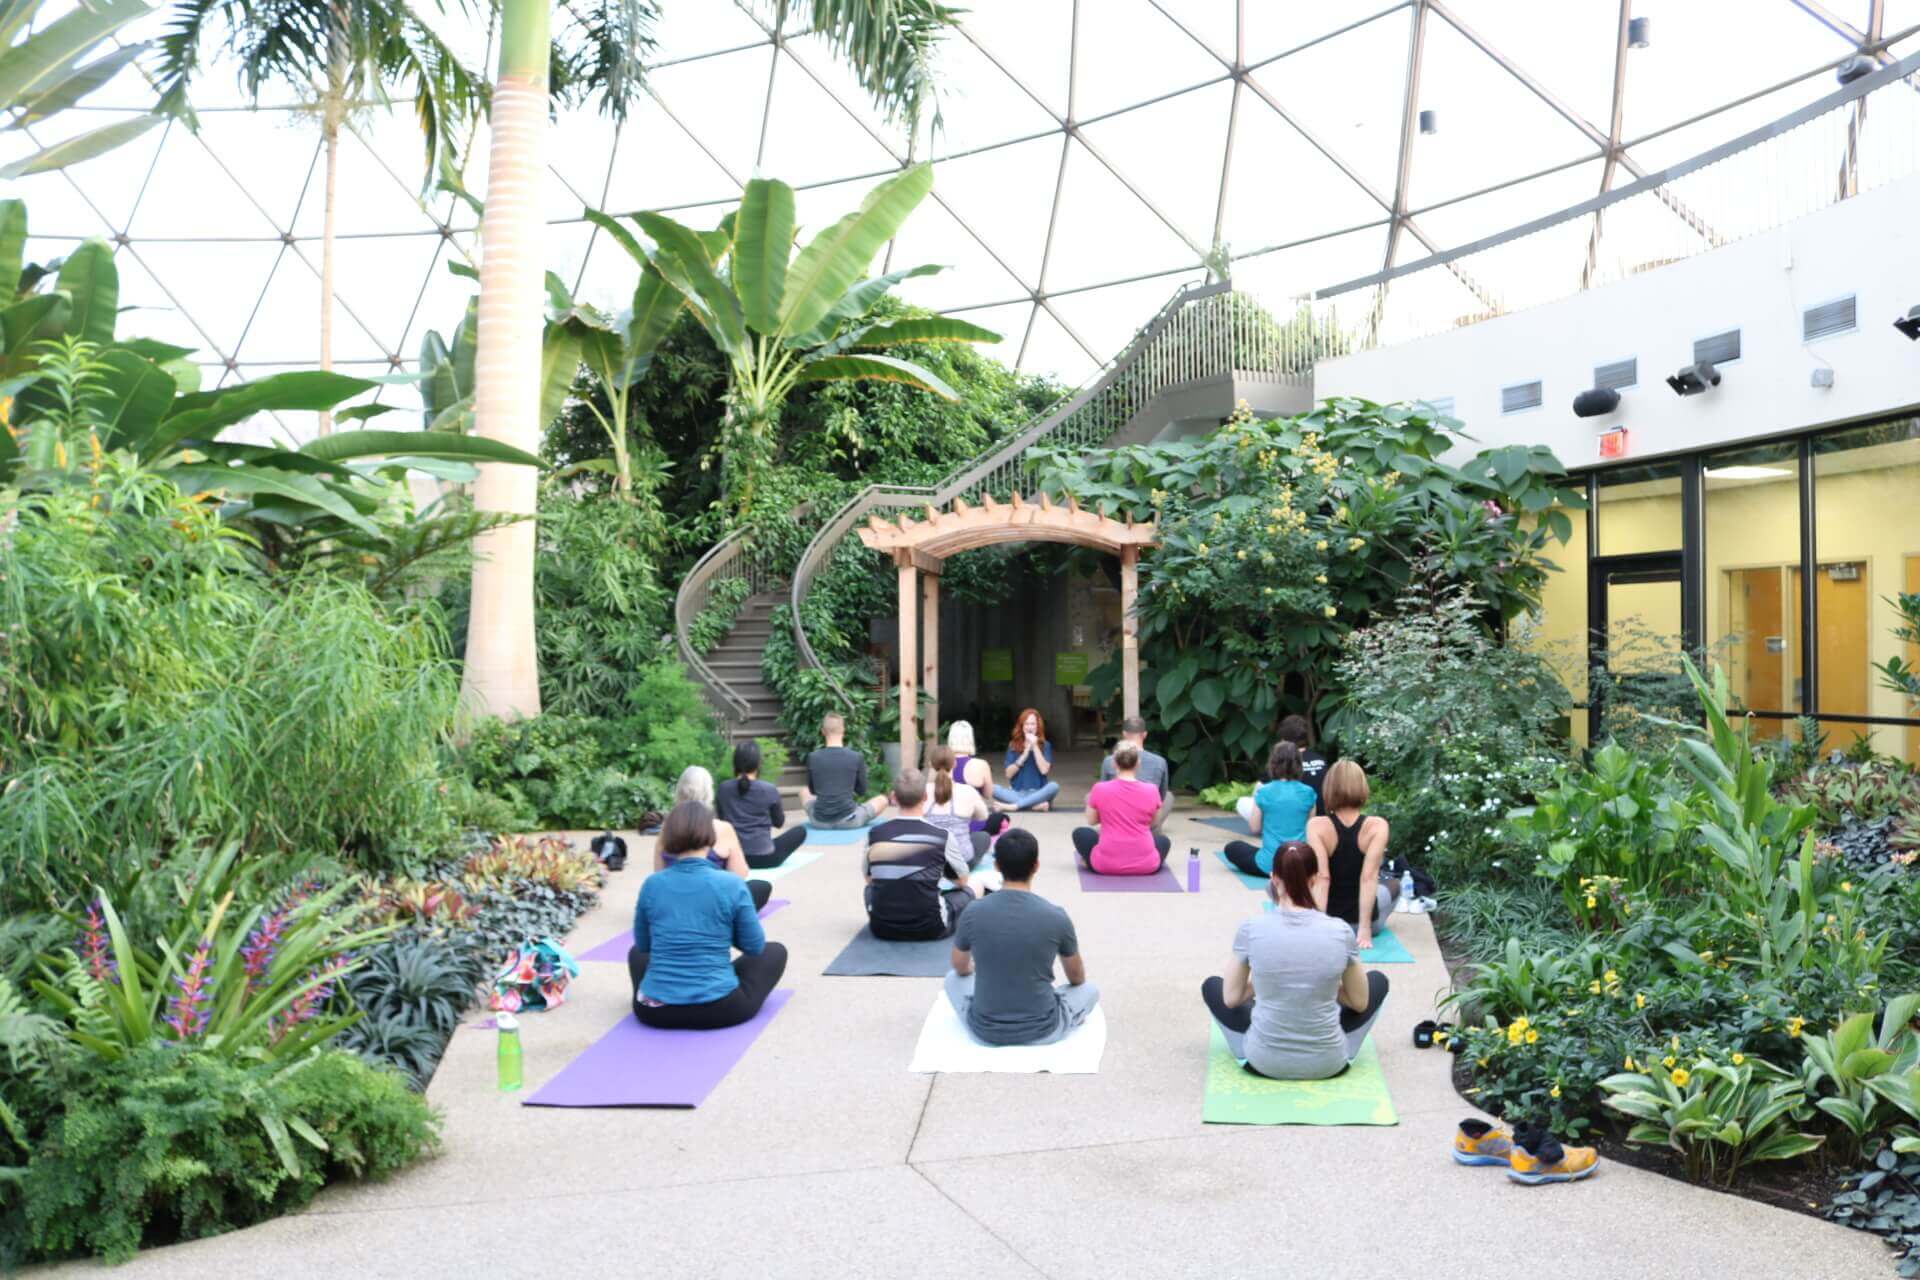 Yoga At The Garden - Greater Des Moines Botanical Garden